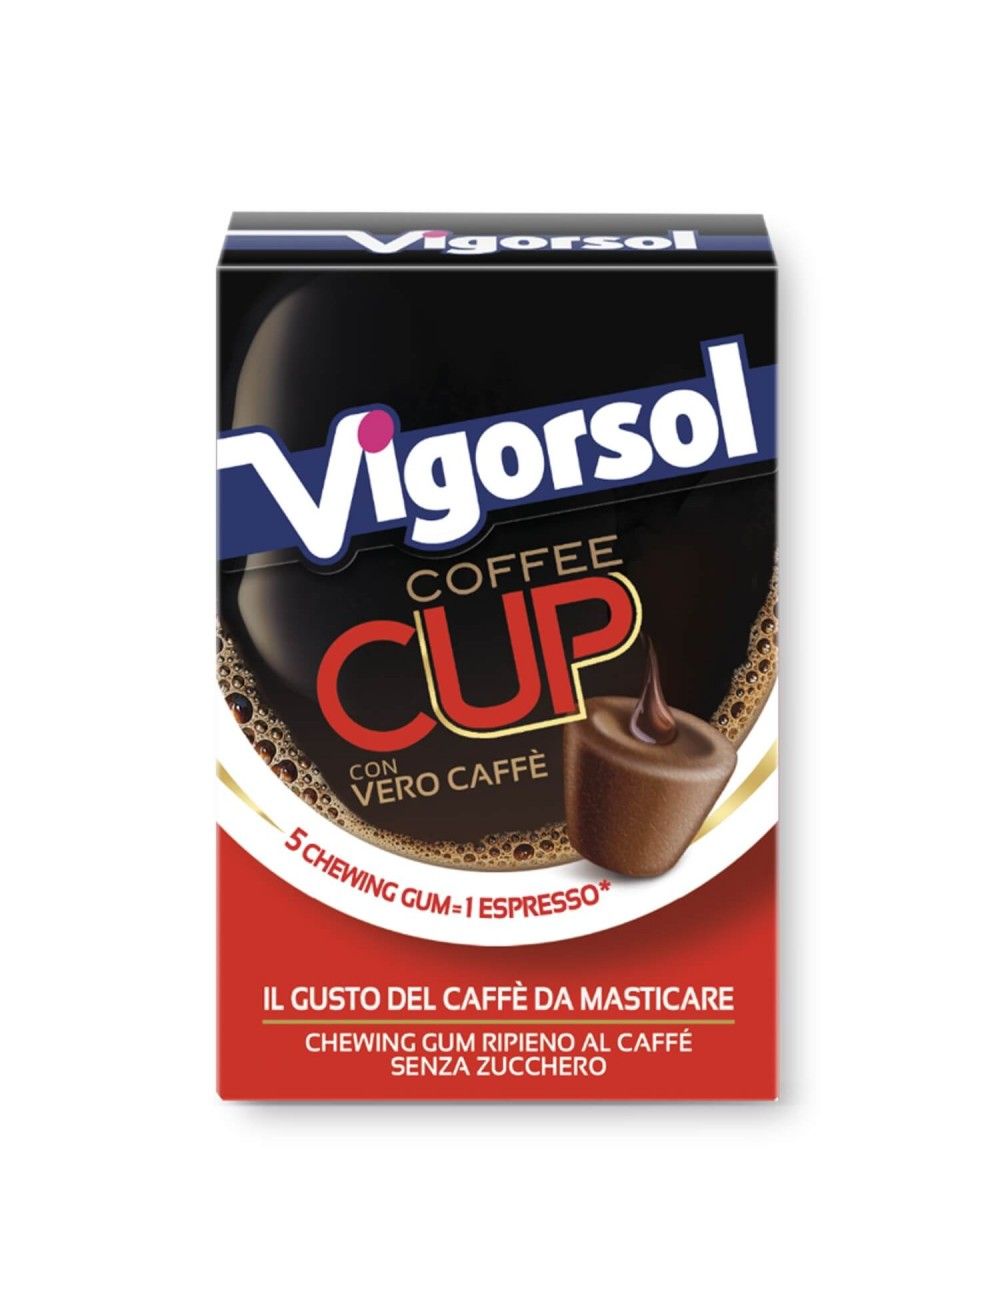 Vigorsol Coffee Cup Senza Zucchero Confezione da 20 astucci